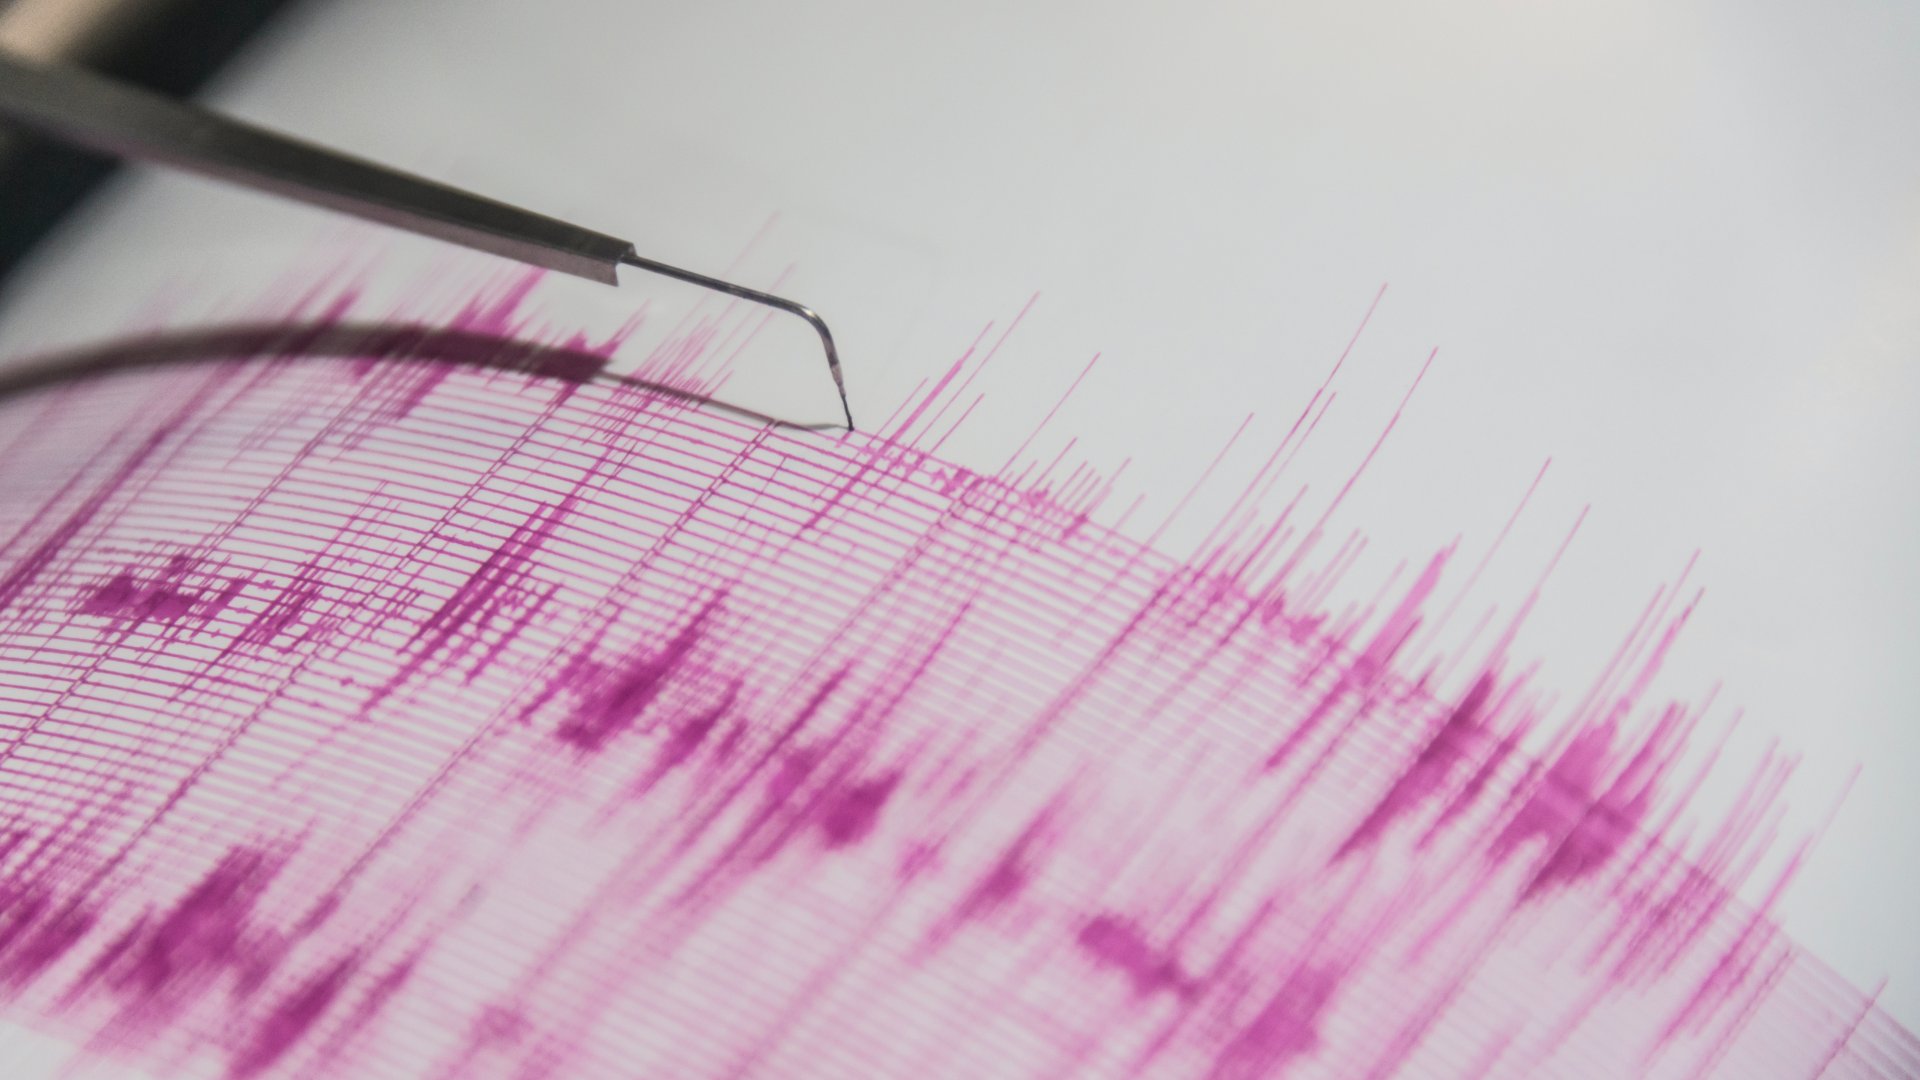 Földrengést jelző szeizmológiai műszer rajza